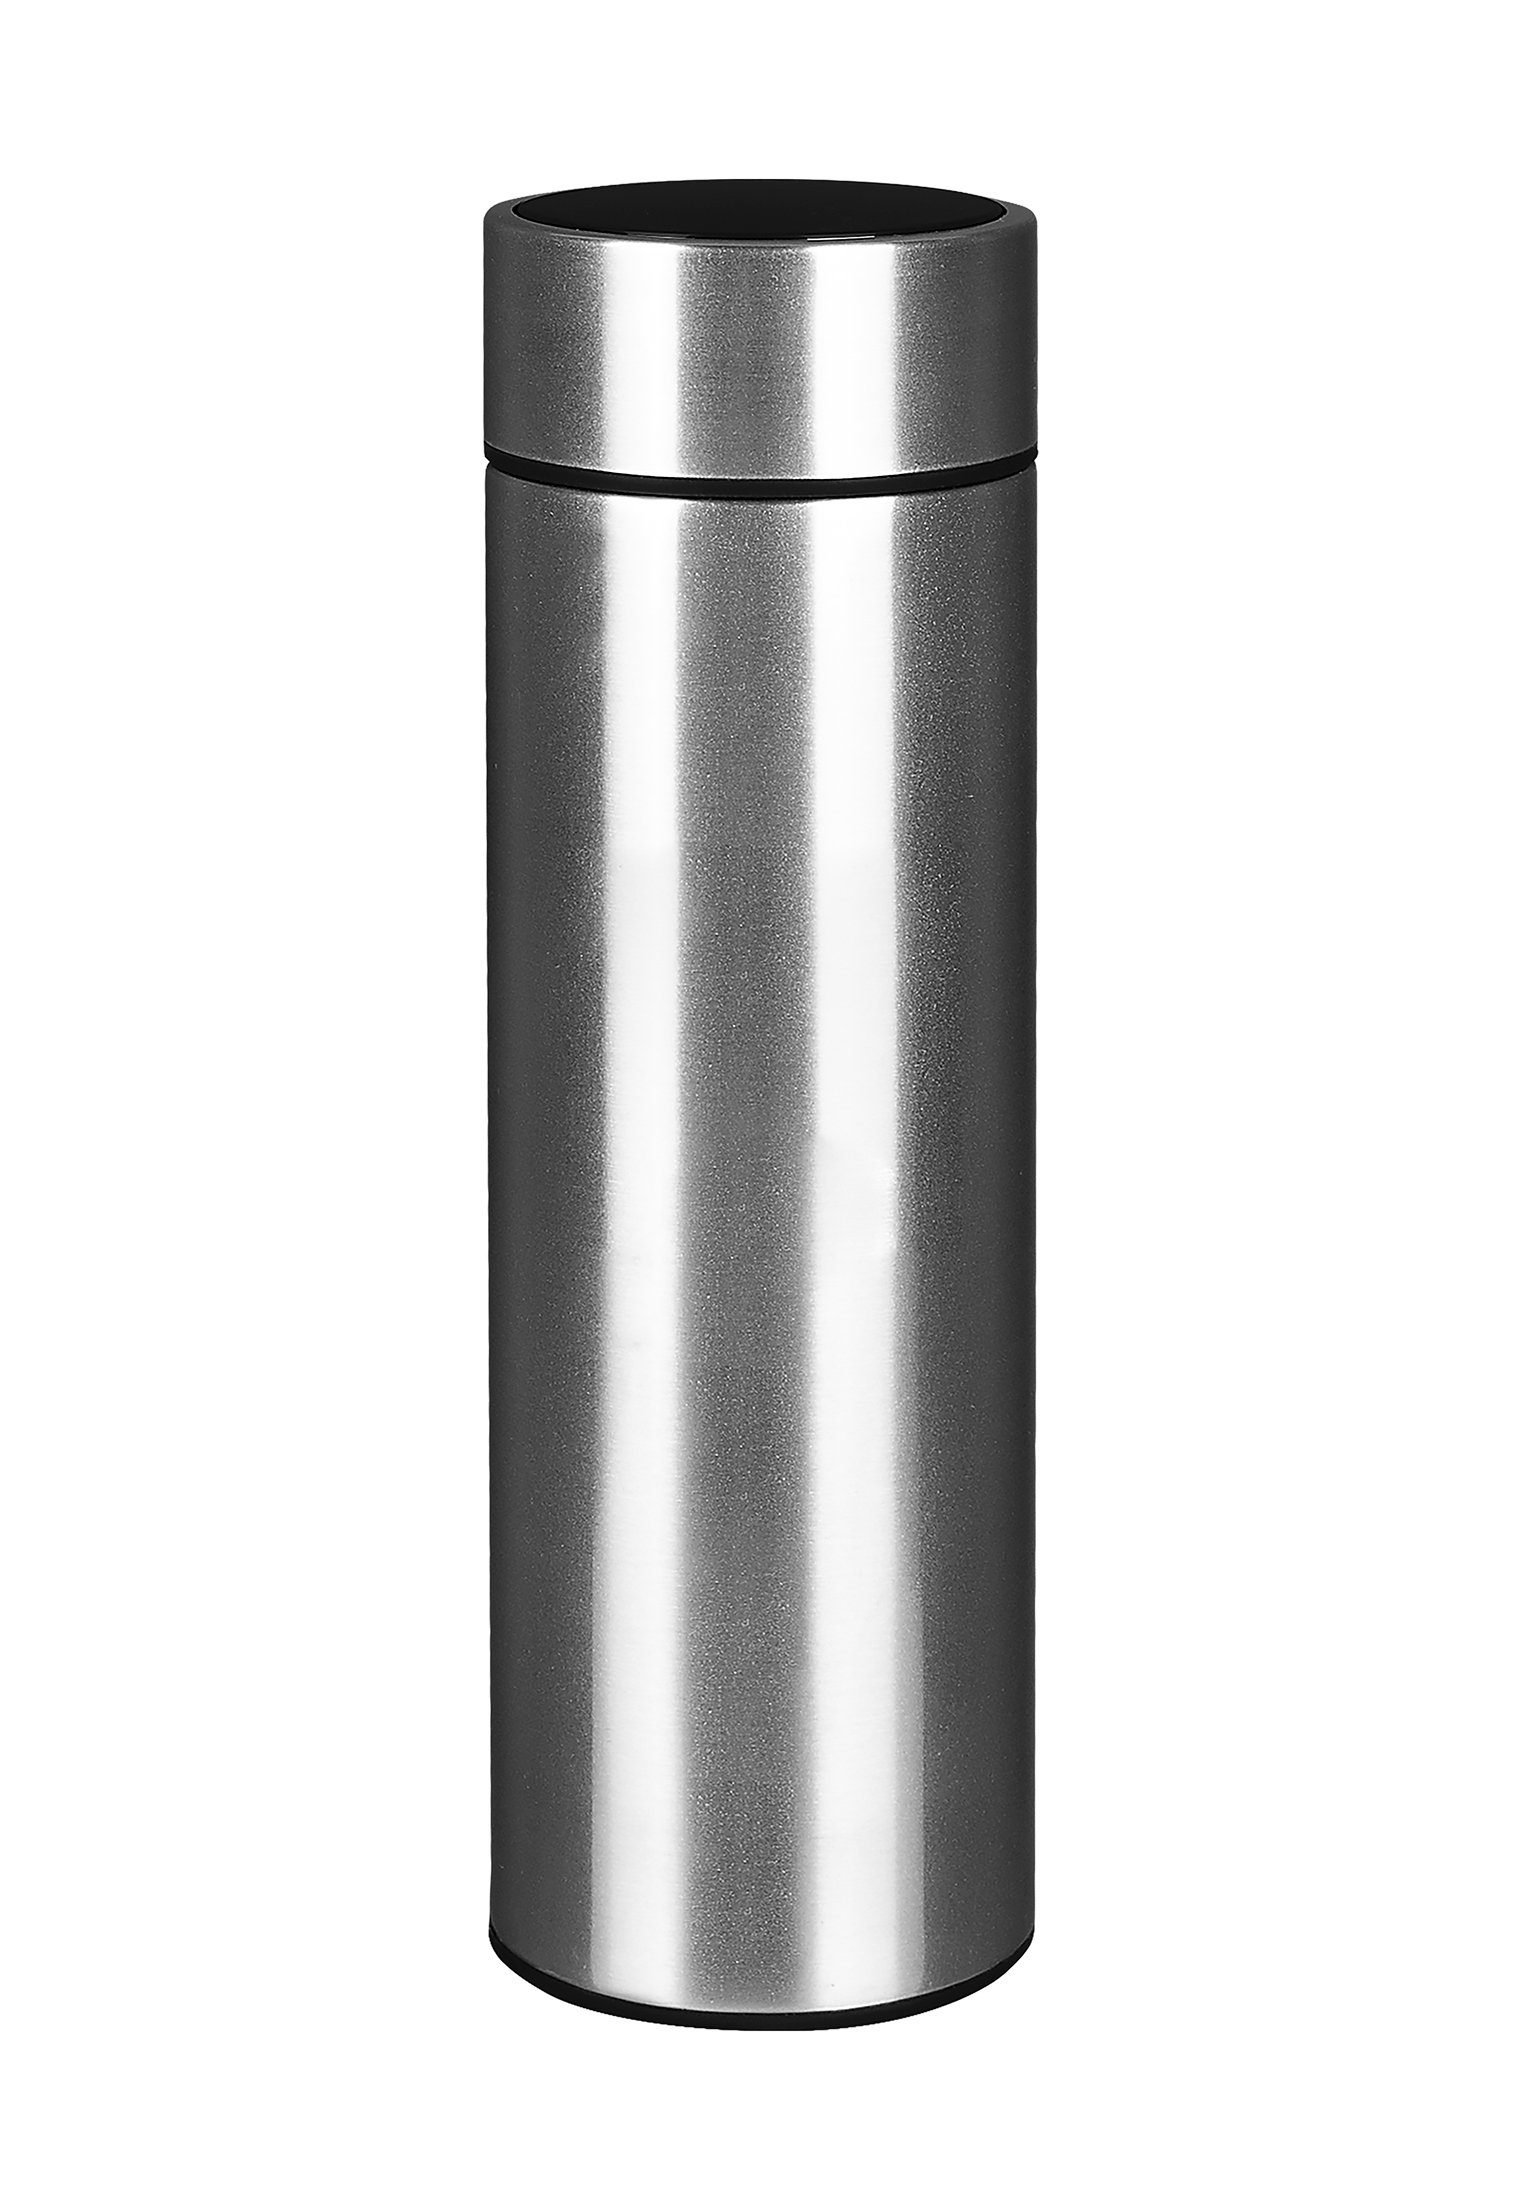 Trinkflasche Trinkflasche ml BLESS Bottle 500 Smart Sweden Silver LED-Temperaturanzeige